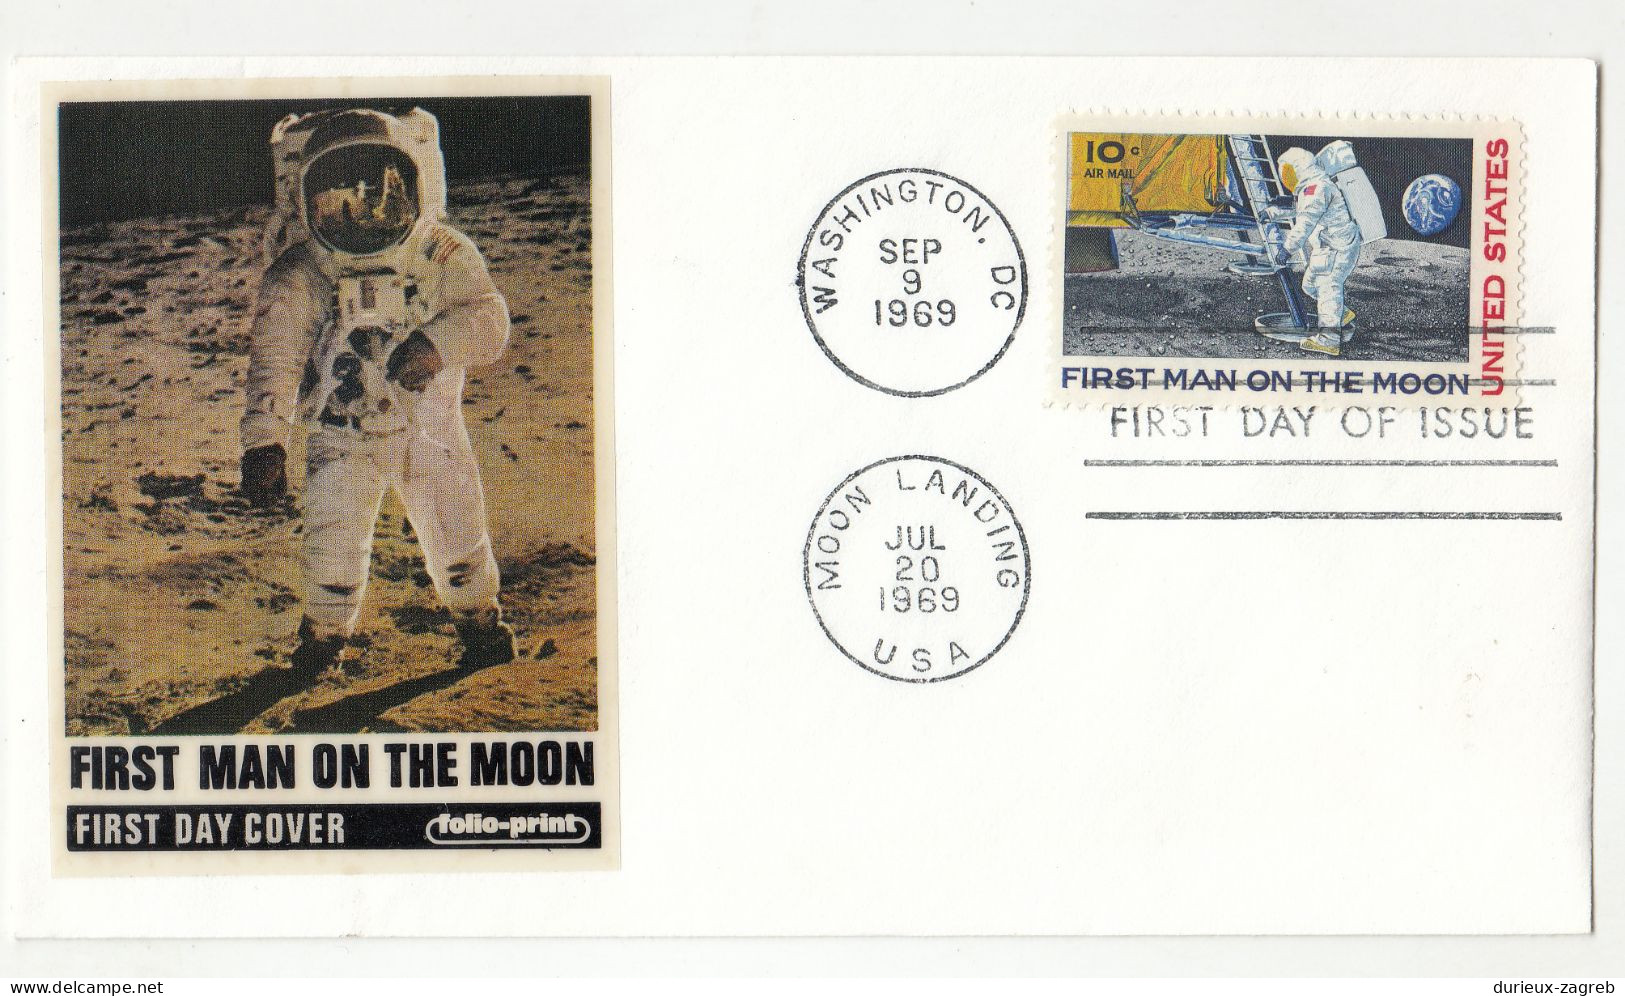 USA 4 Space FDCs 1969/71 Apollo 12 - First Men On The Moon - (3 Folioprint) B230820 - Nordamerika